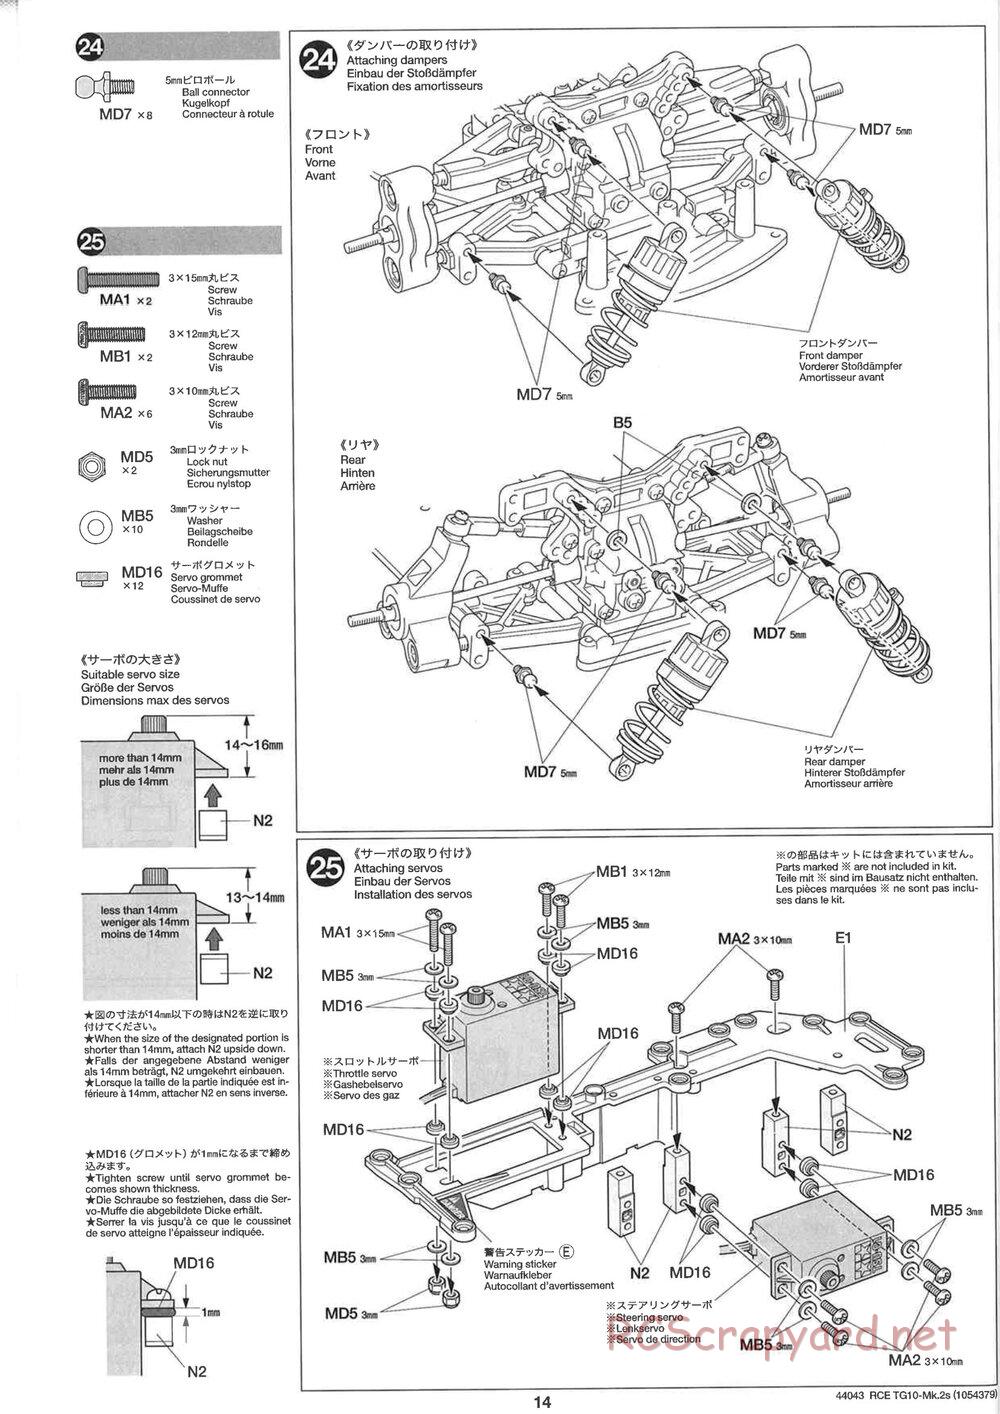 Tamiya - TG10 Mk.2s Chassis - Manual - Page 15